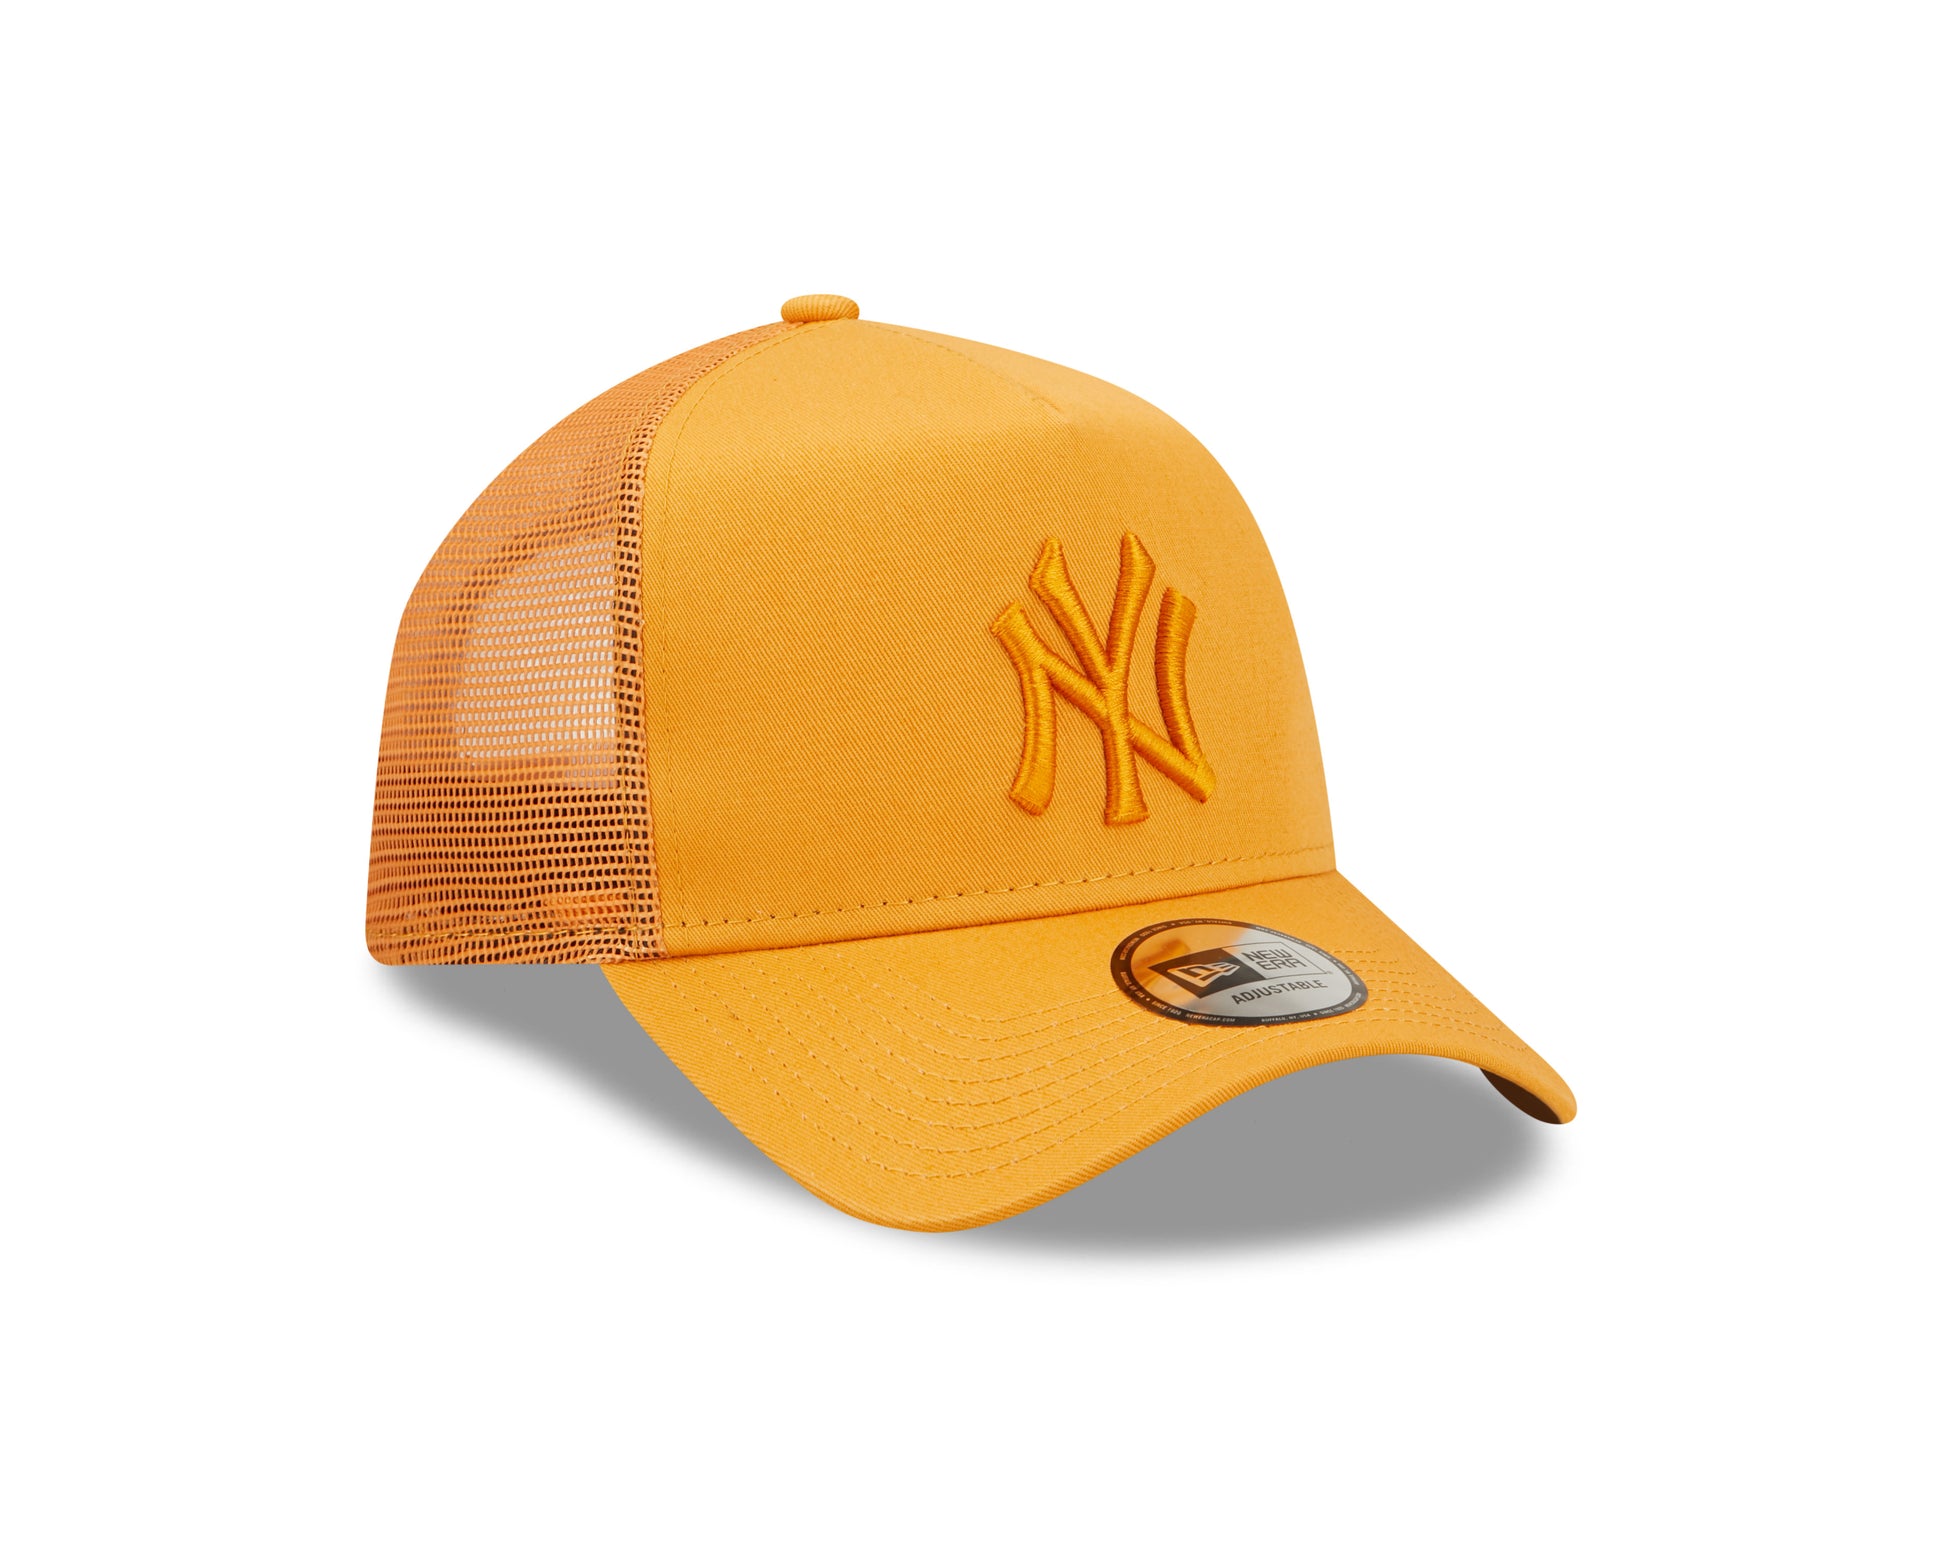 Tonal Mesh Trucker Cap New York Yankees - Orange - Headz Up 